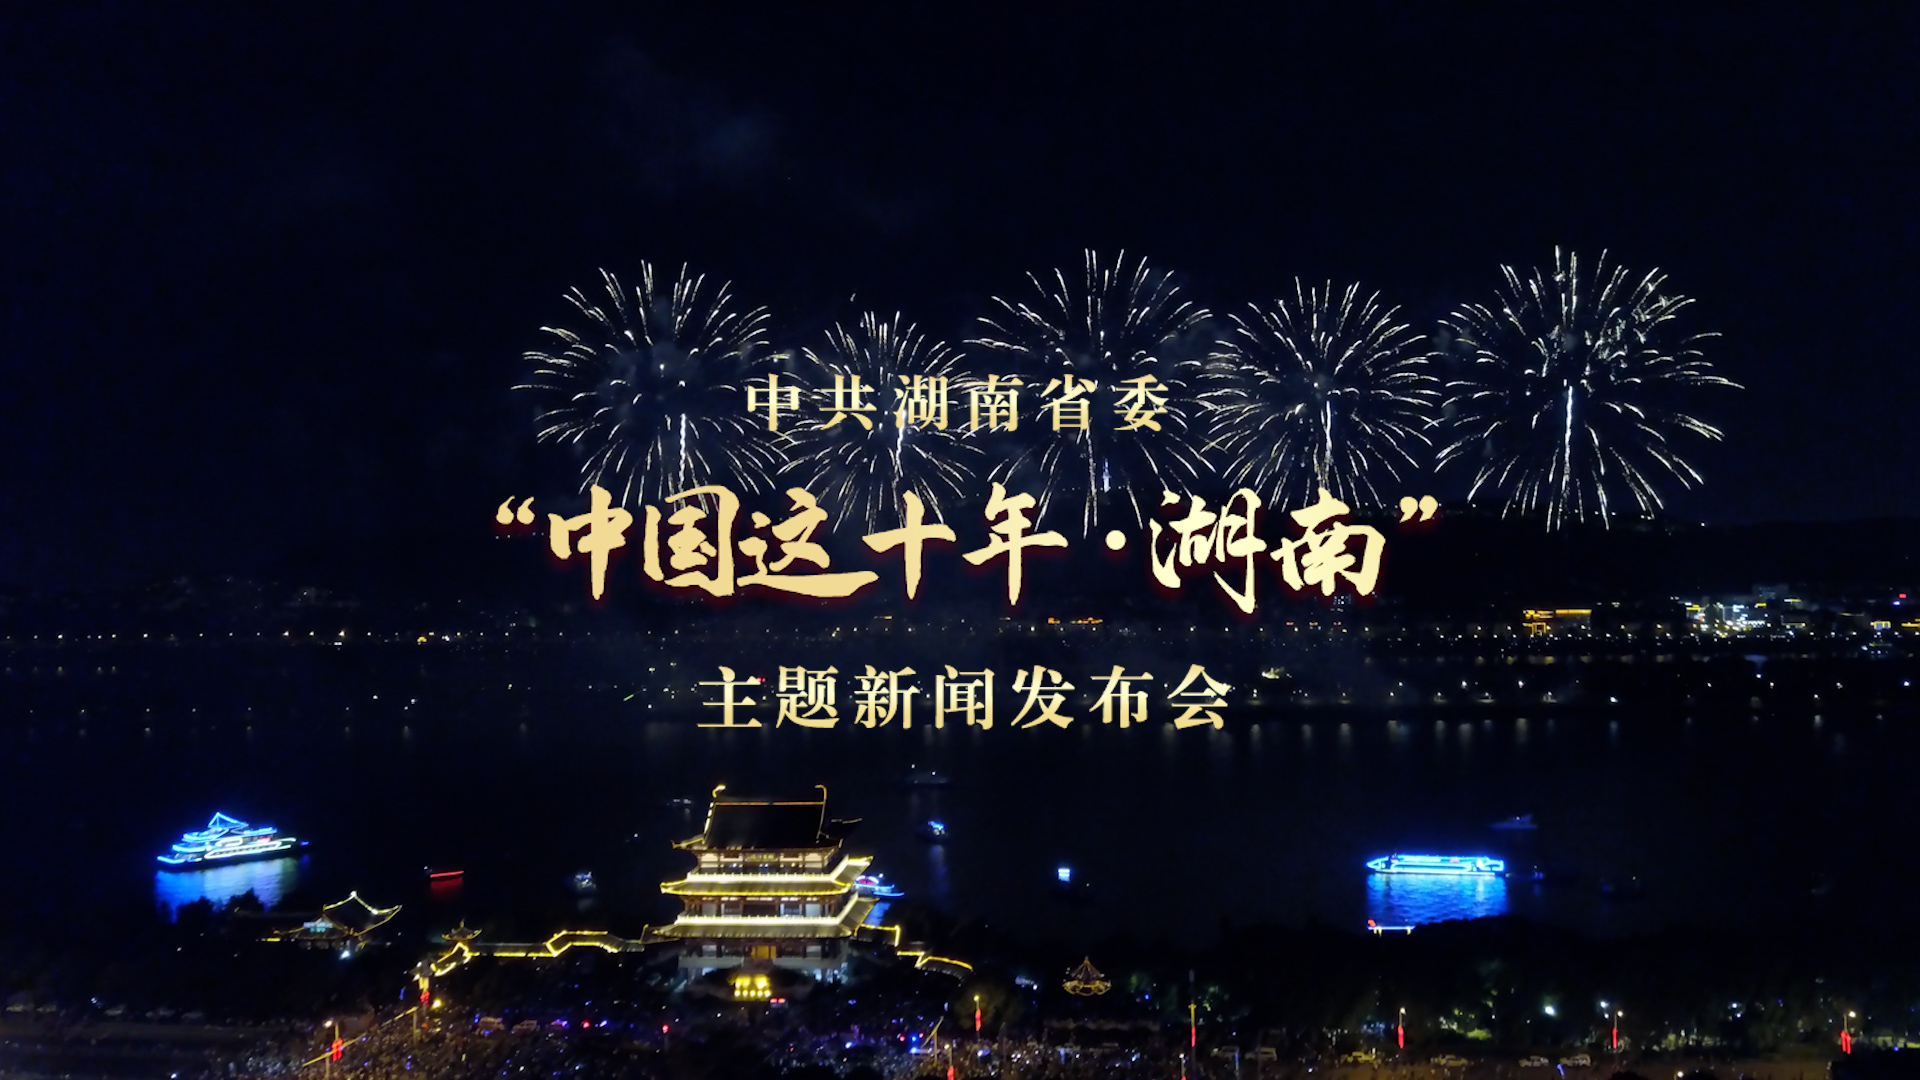 湖南省委书记欢迎您来长沙醴陵、张家界、浏阳打卡|中国这十年·湖南